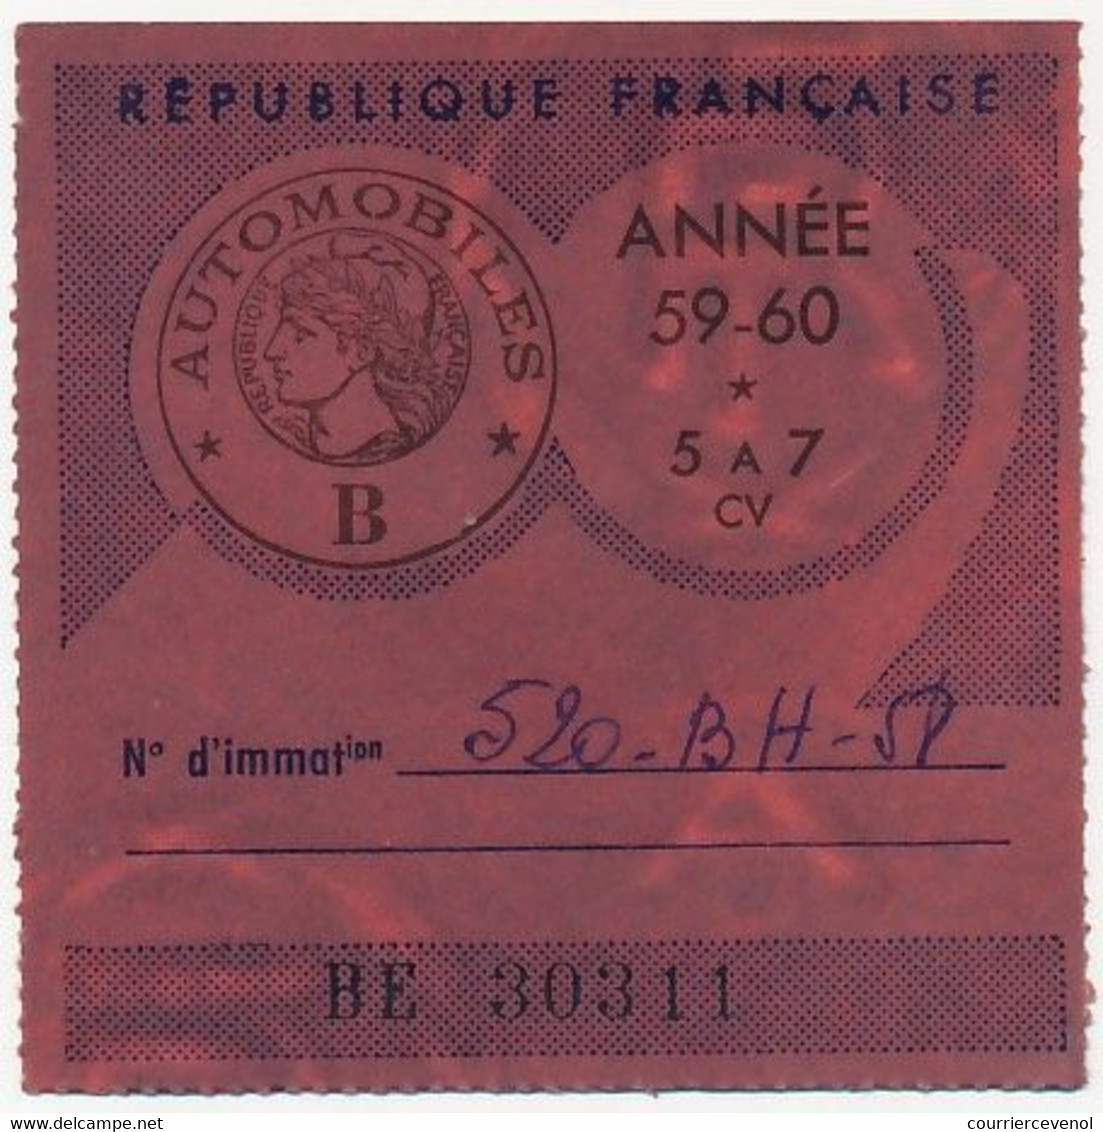 FRANCE - Vignettes Automobile 1959/60 - 1961/62 - 1962/63 - Véhicule 5 à 7 Cv - Covers & Documents